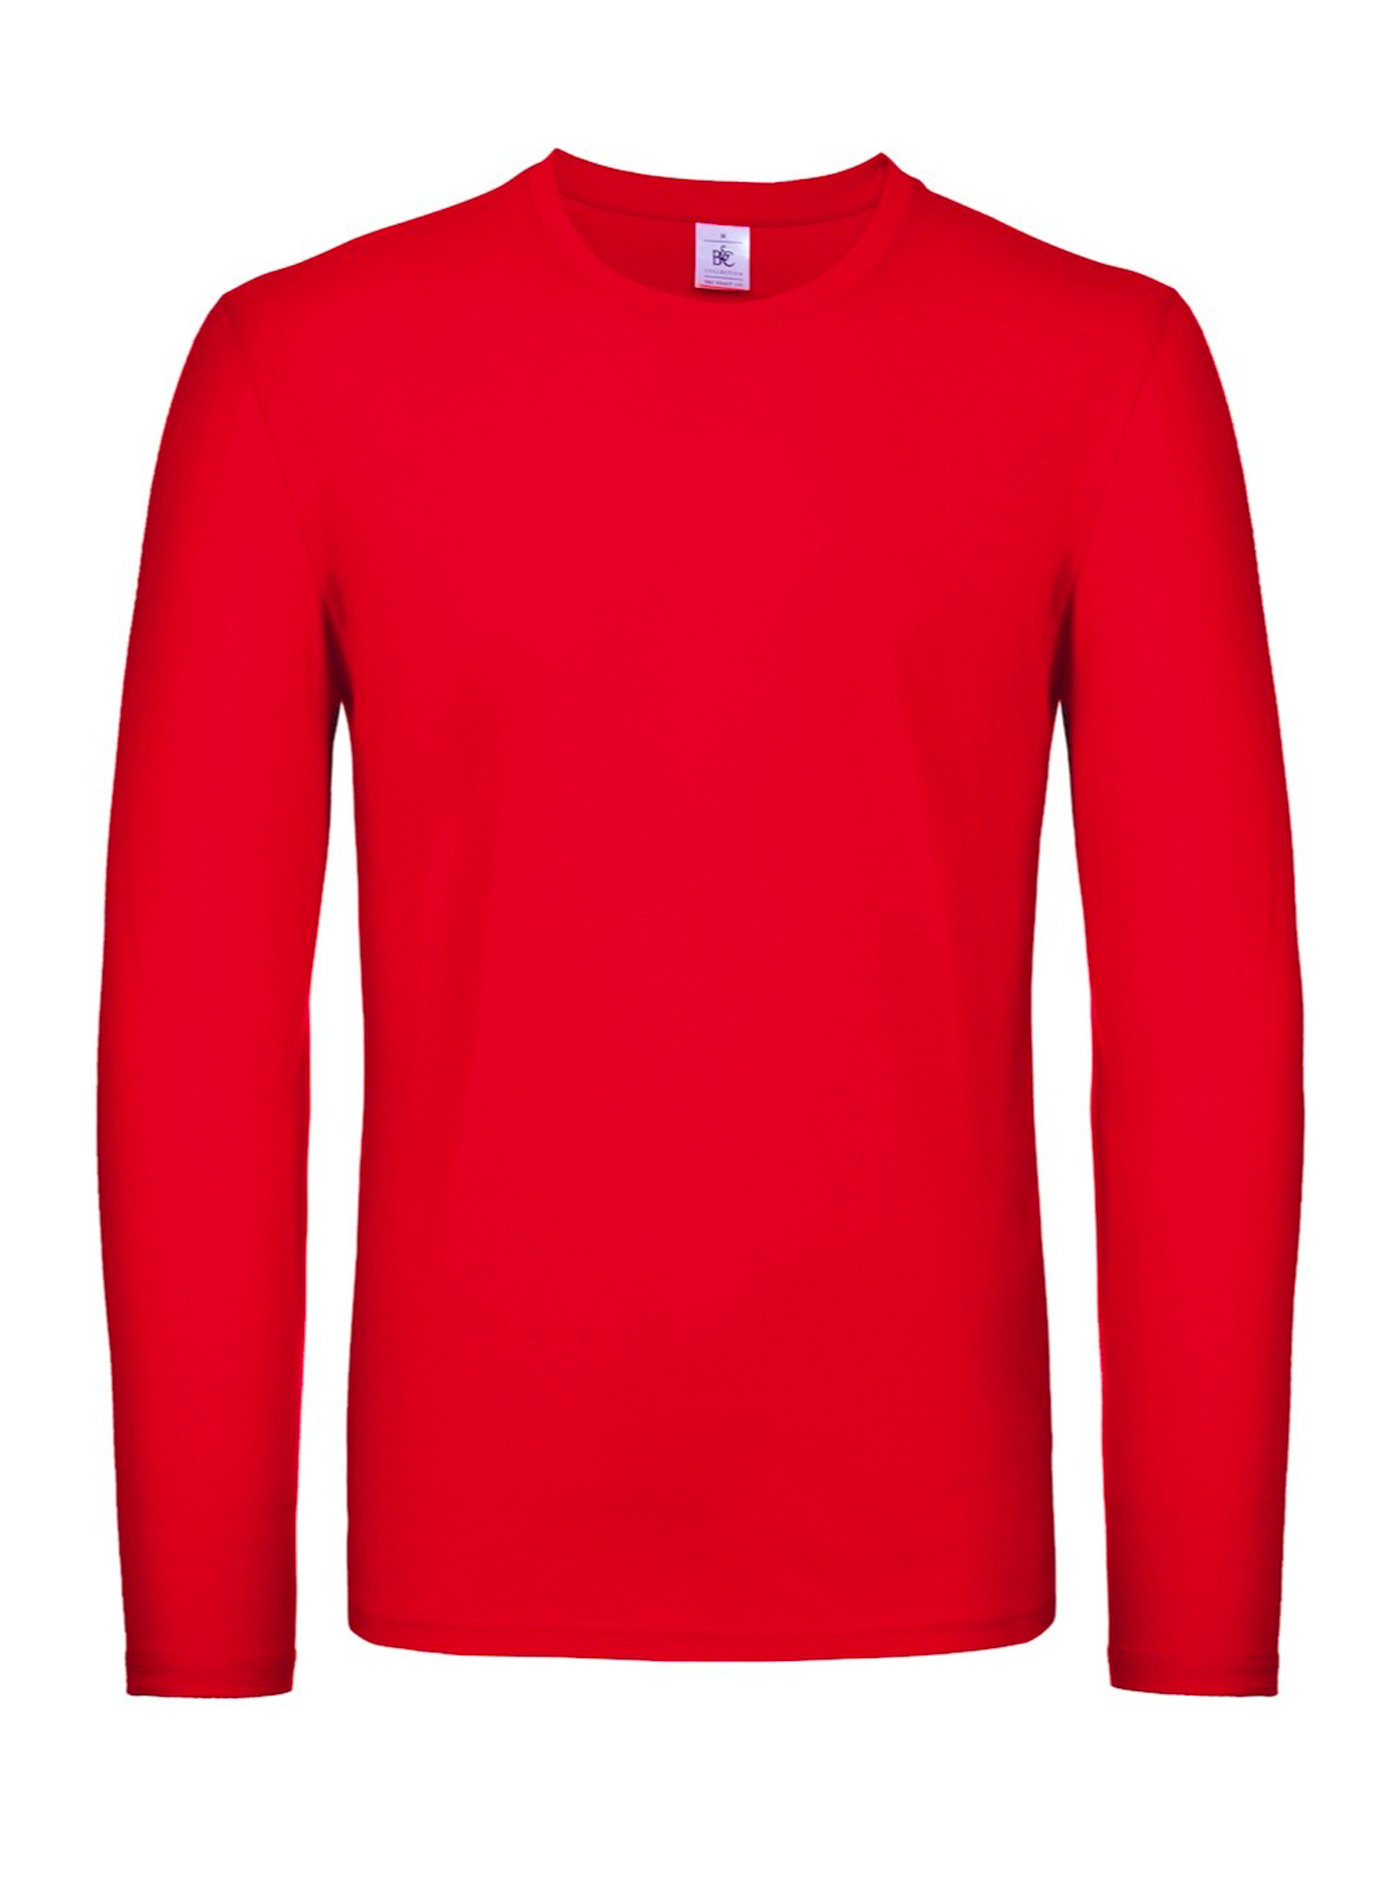 Tričko s dlouhým rukávem B&C Collection - Červená 4XL